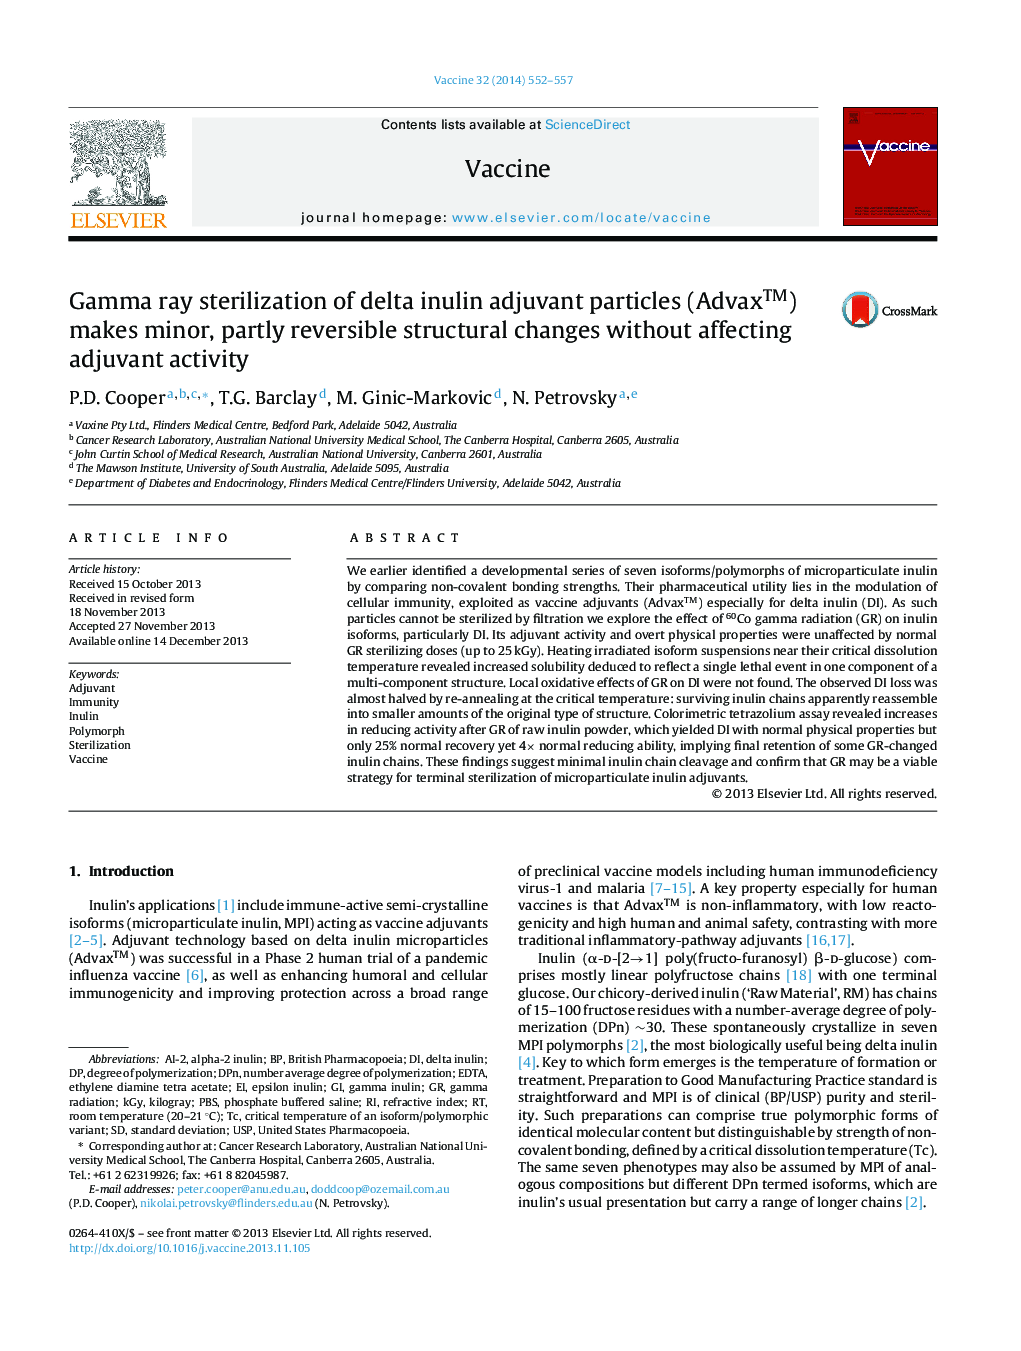 Gamma ray sterilization of delta inulin adjuvant particles (Advaxâ¢) makes minor, partly reversible structural changes without affecting adjuvant activity